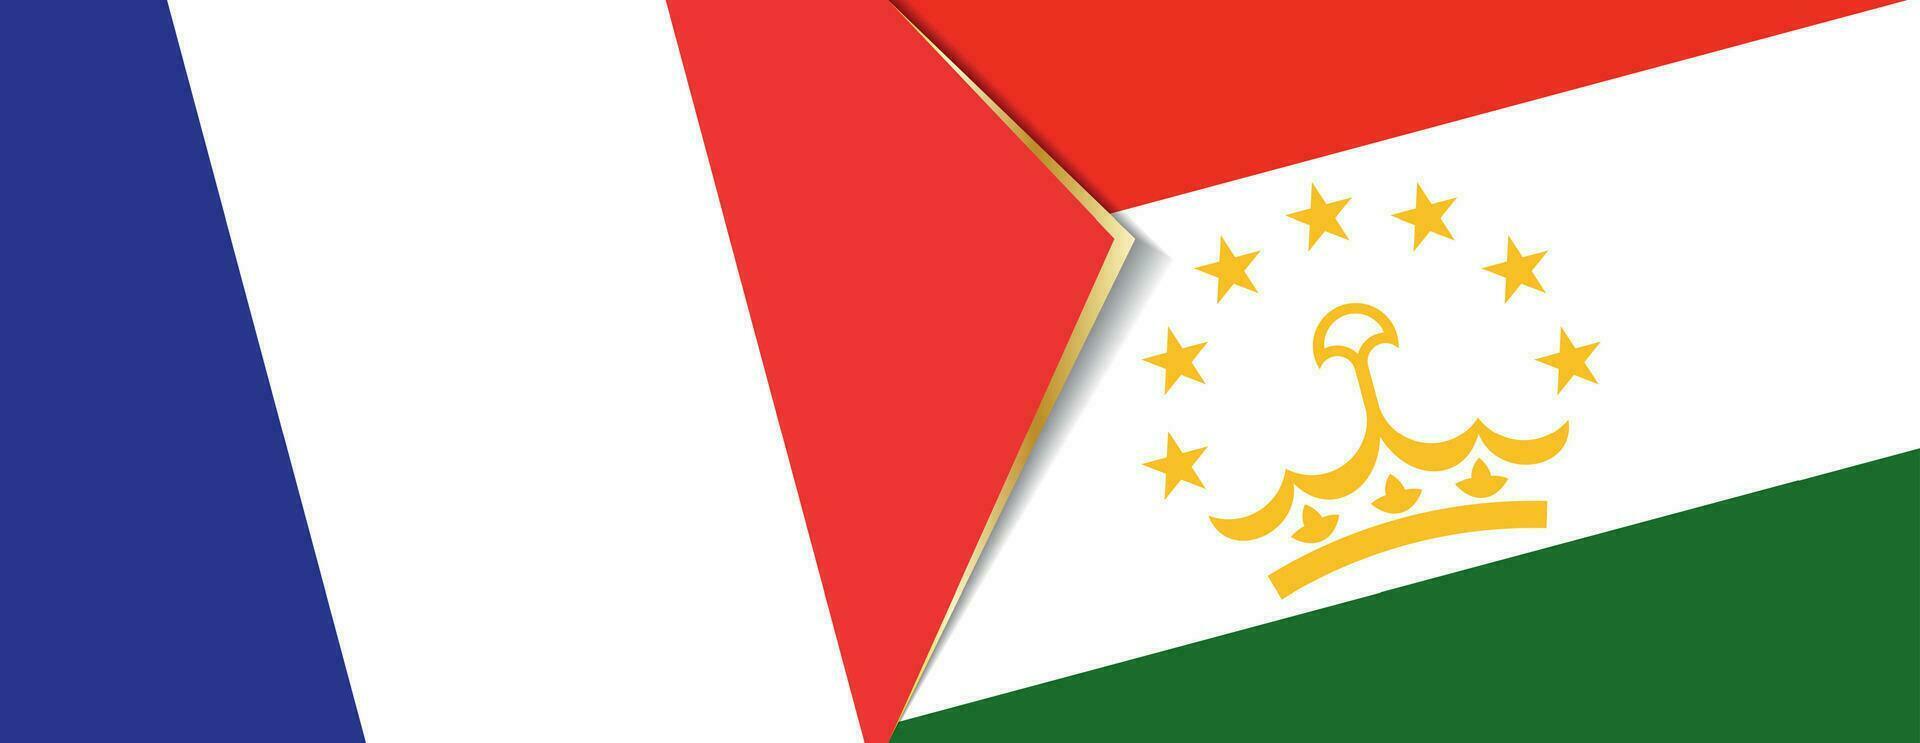 Francia e tagikistan bandiere, Due vettore bandiere.